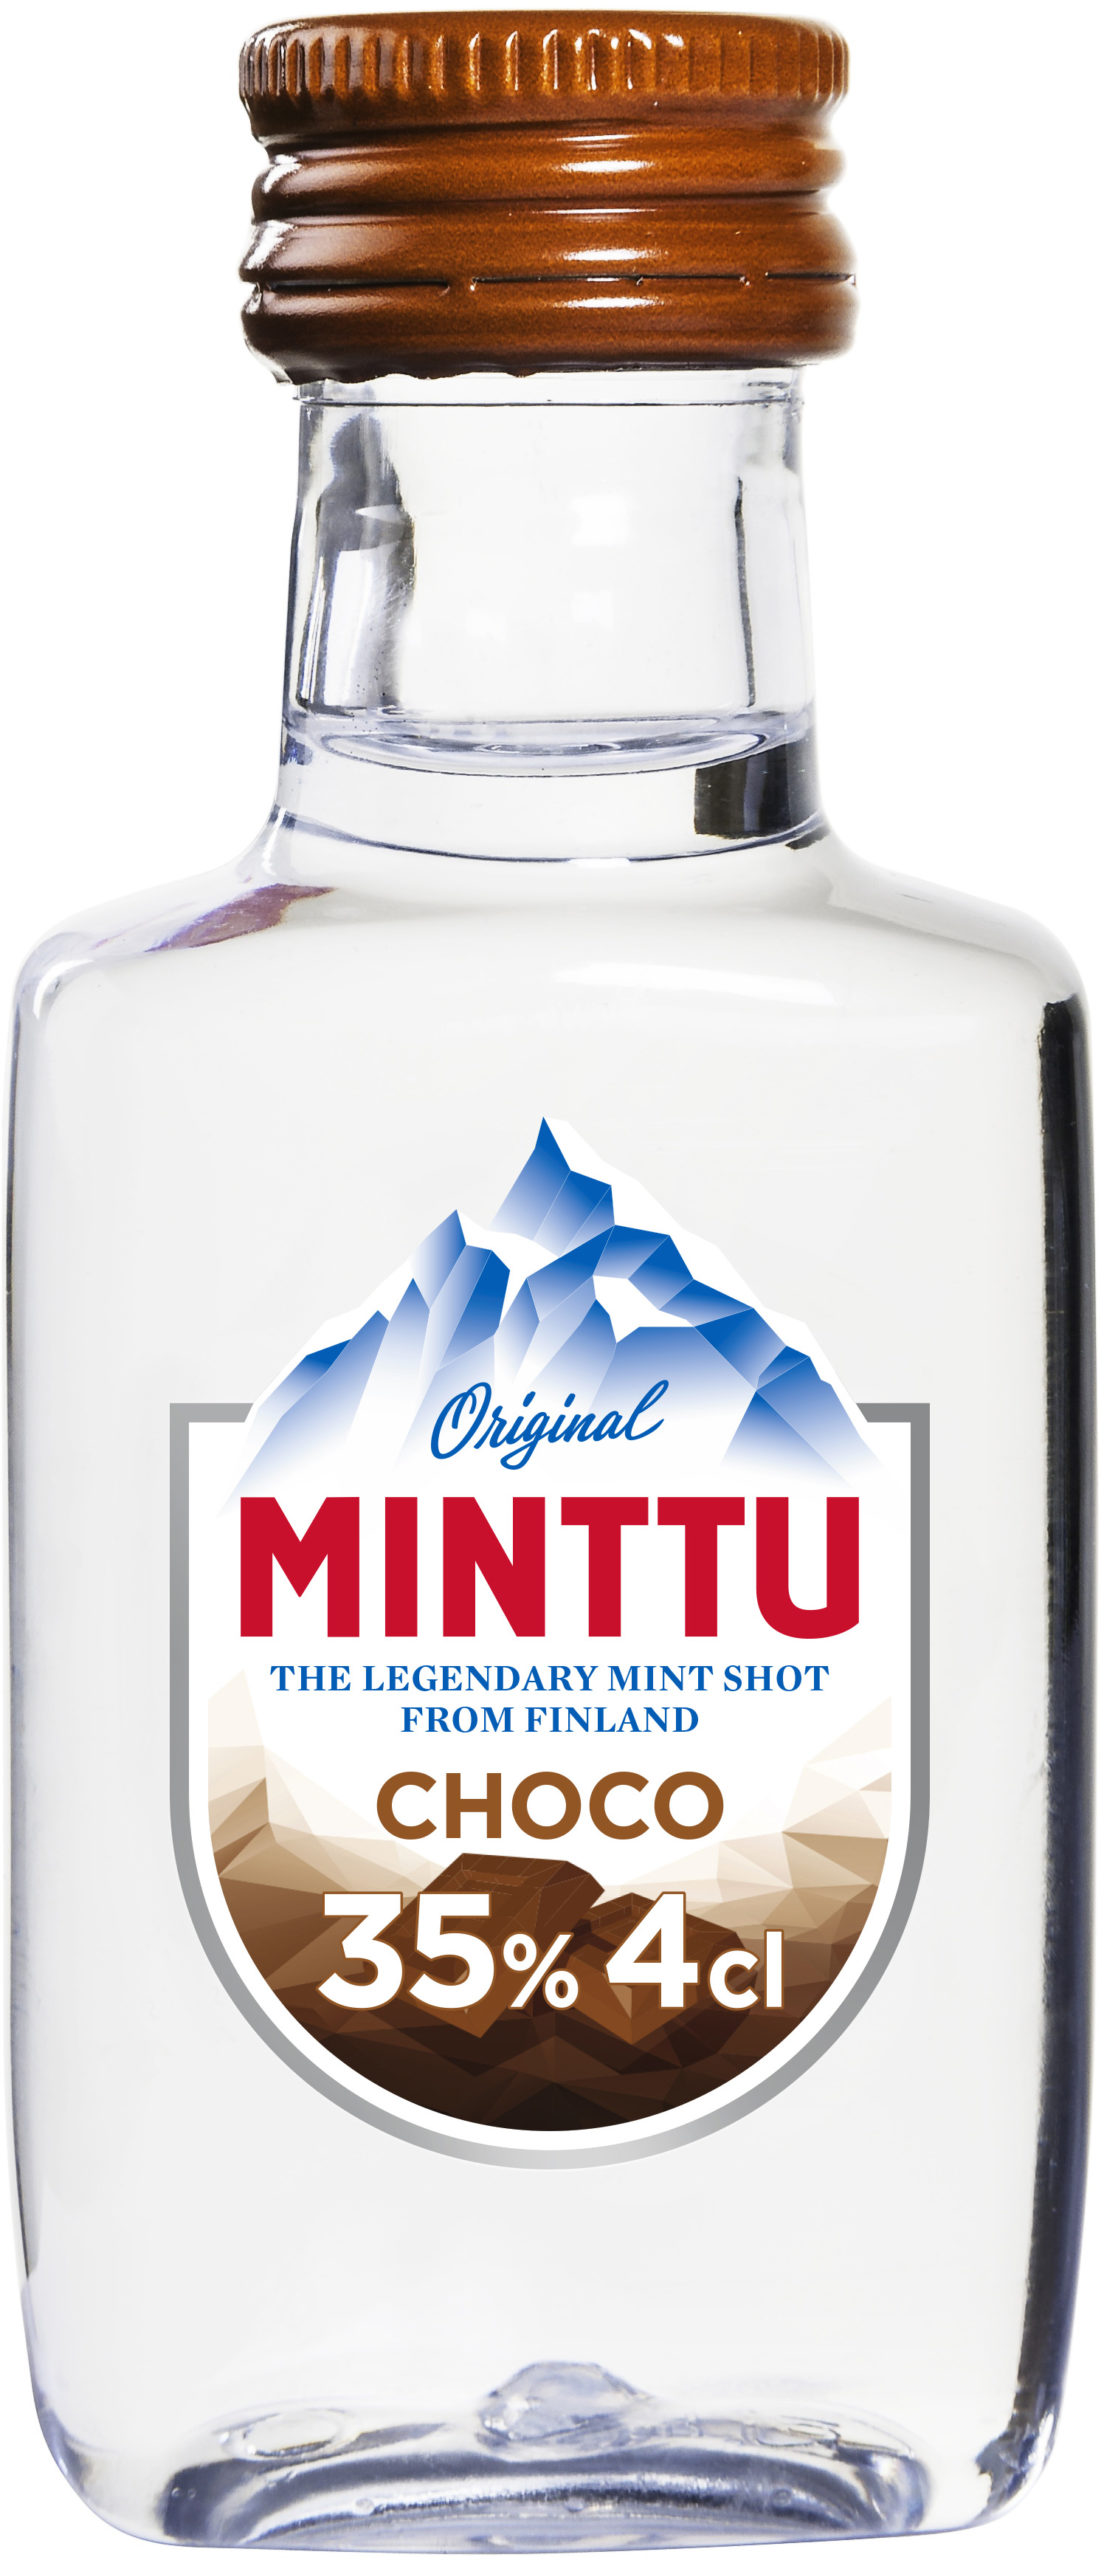 Minttu Choco plastic bottle